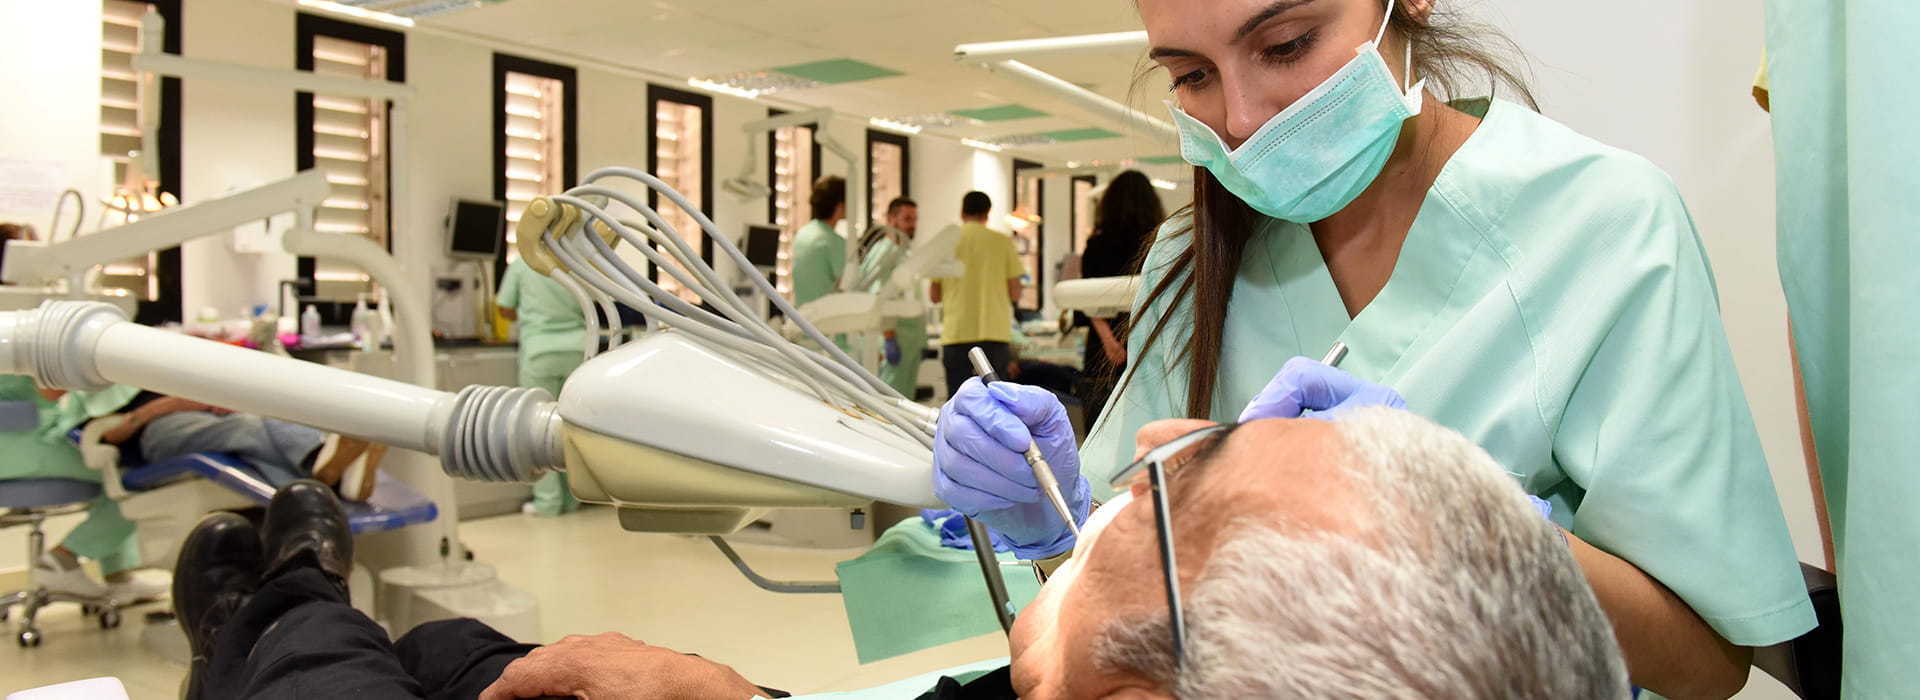 El amplio abanico de especialidades odontológicas de las que dispone la COU permite cumplir nuestro objetivo de cumplir un servicio asistencial en la ciudad de Murcia garantizar la salud buco-dental de la sociedad.